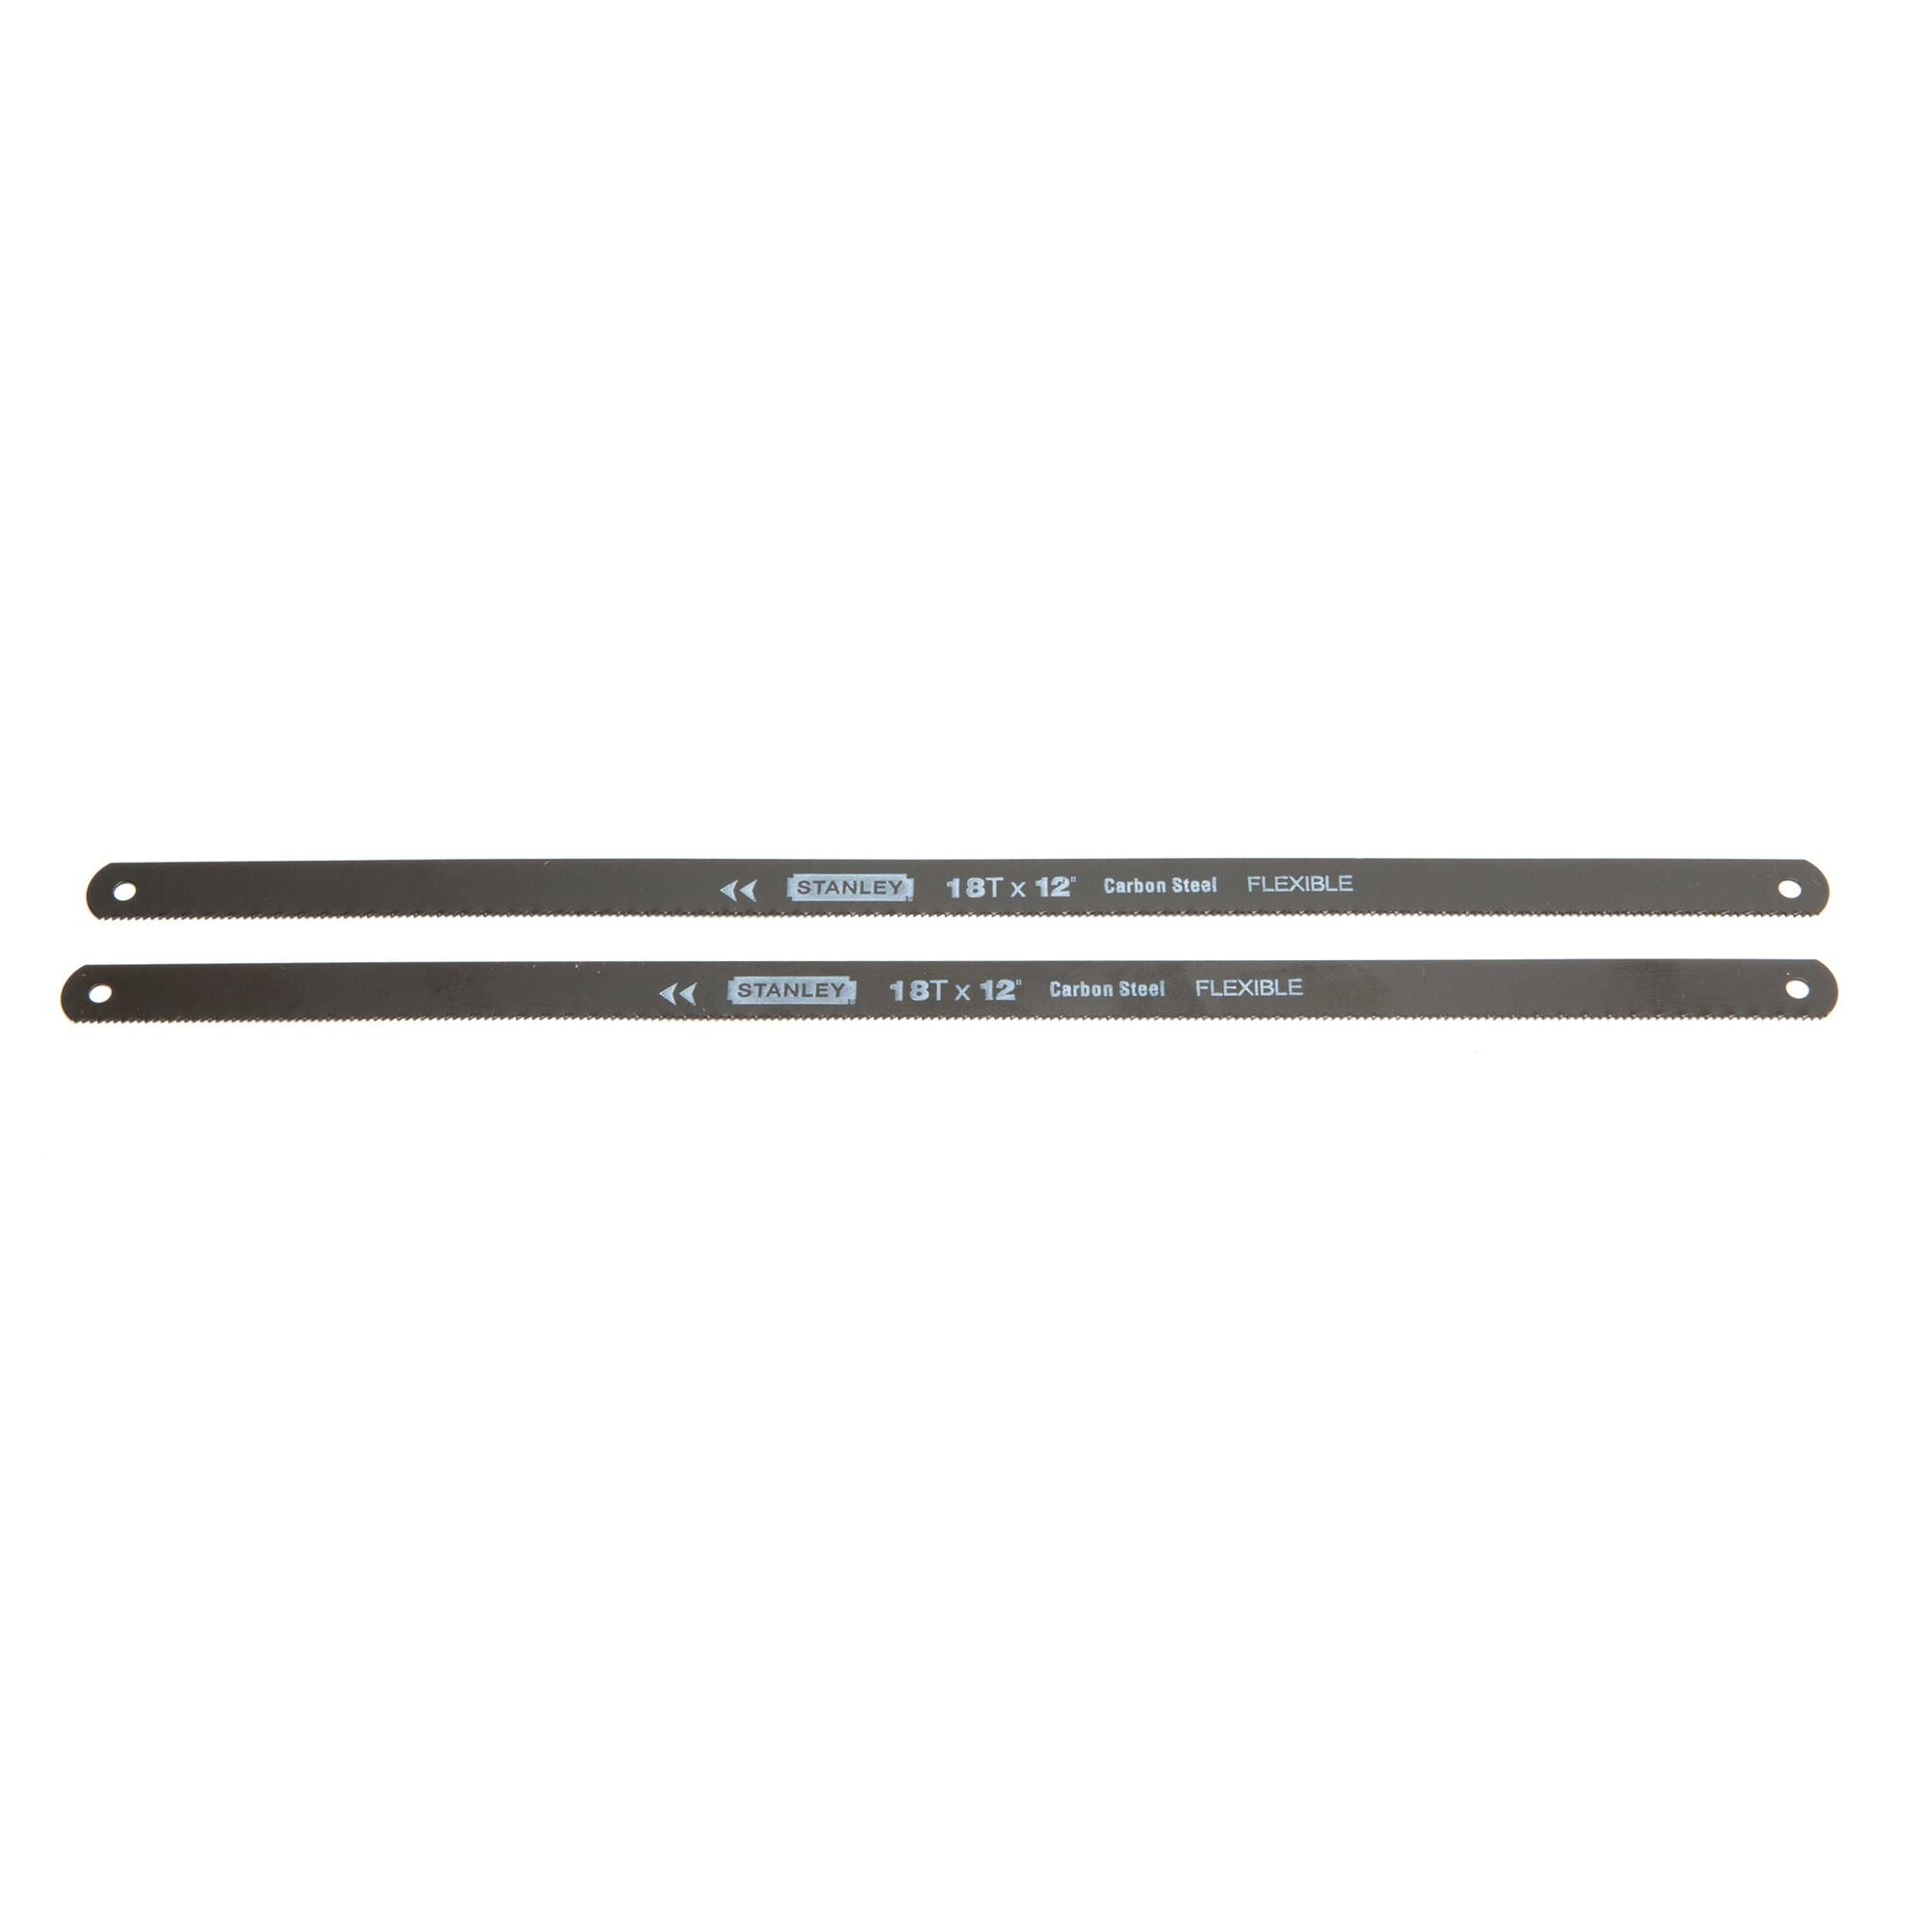 12" 18T Carbon Steel Hacksaw Blade (2 Pack)